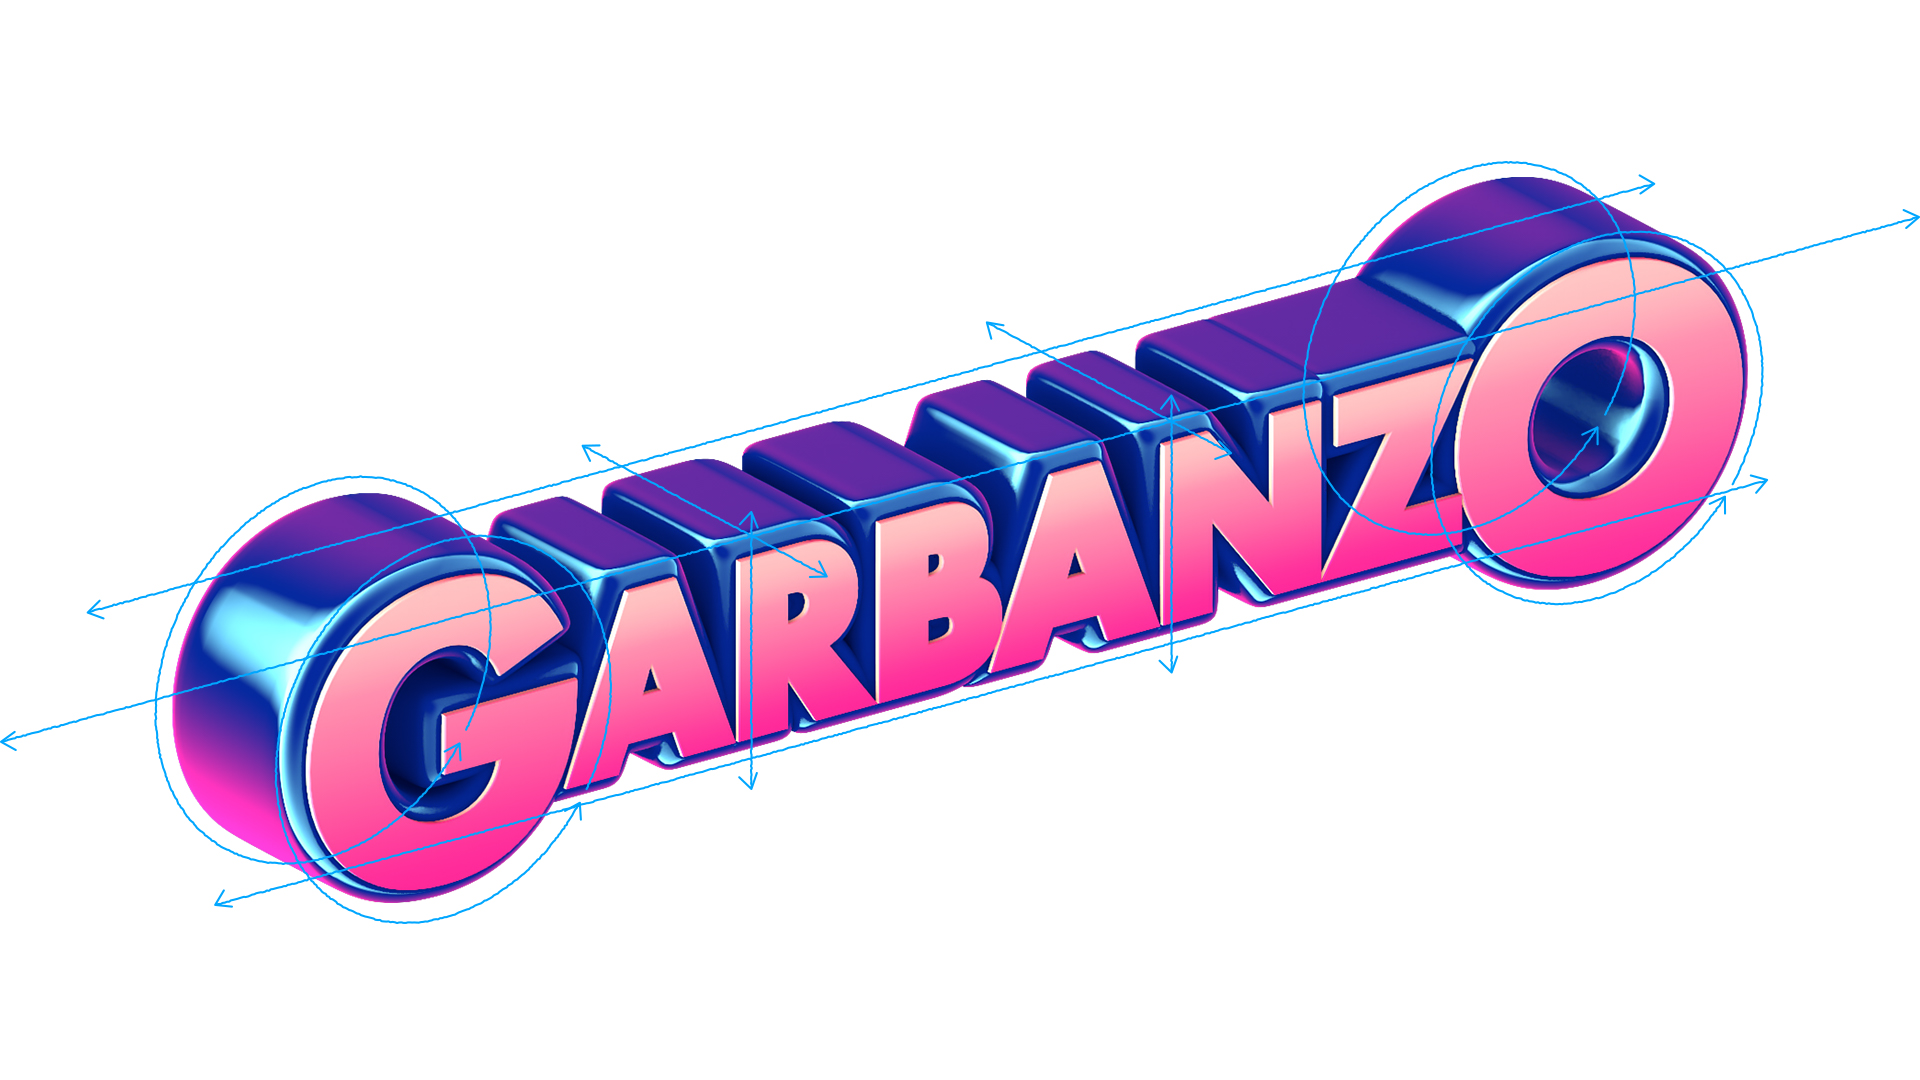 Garbanzo Rebrand 96